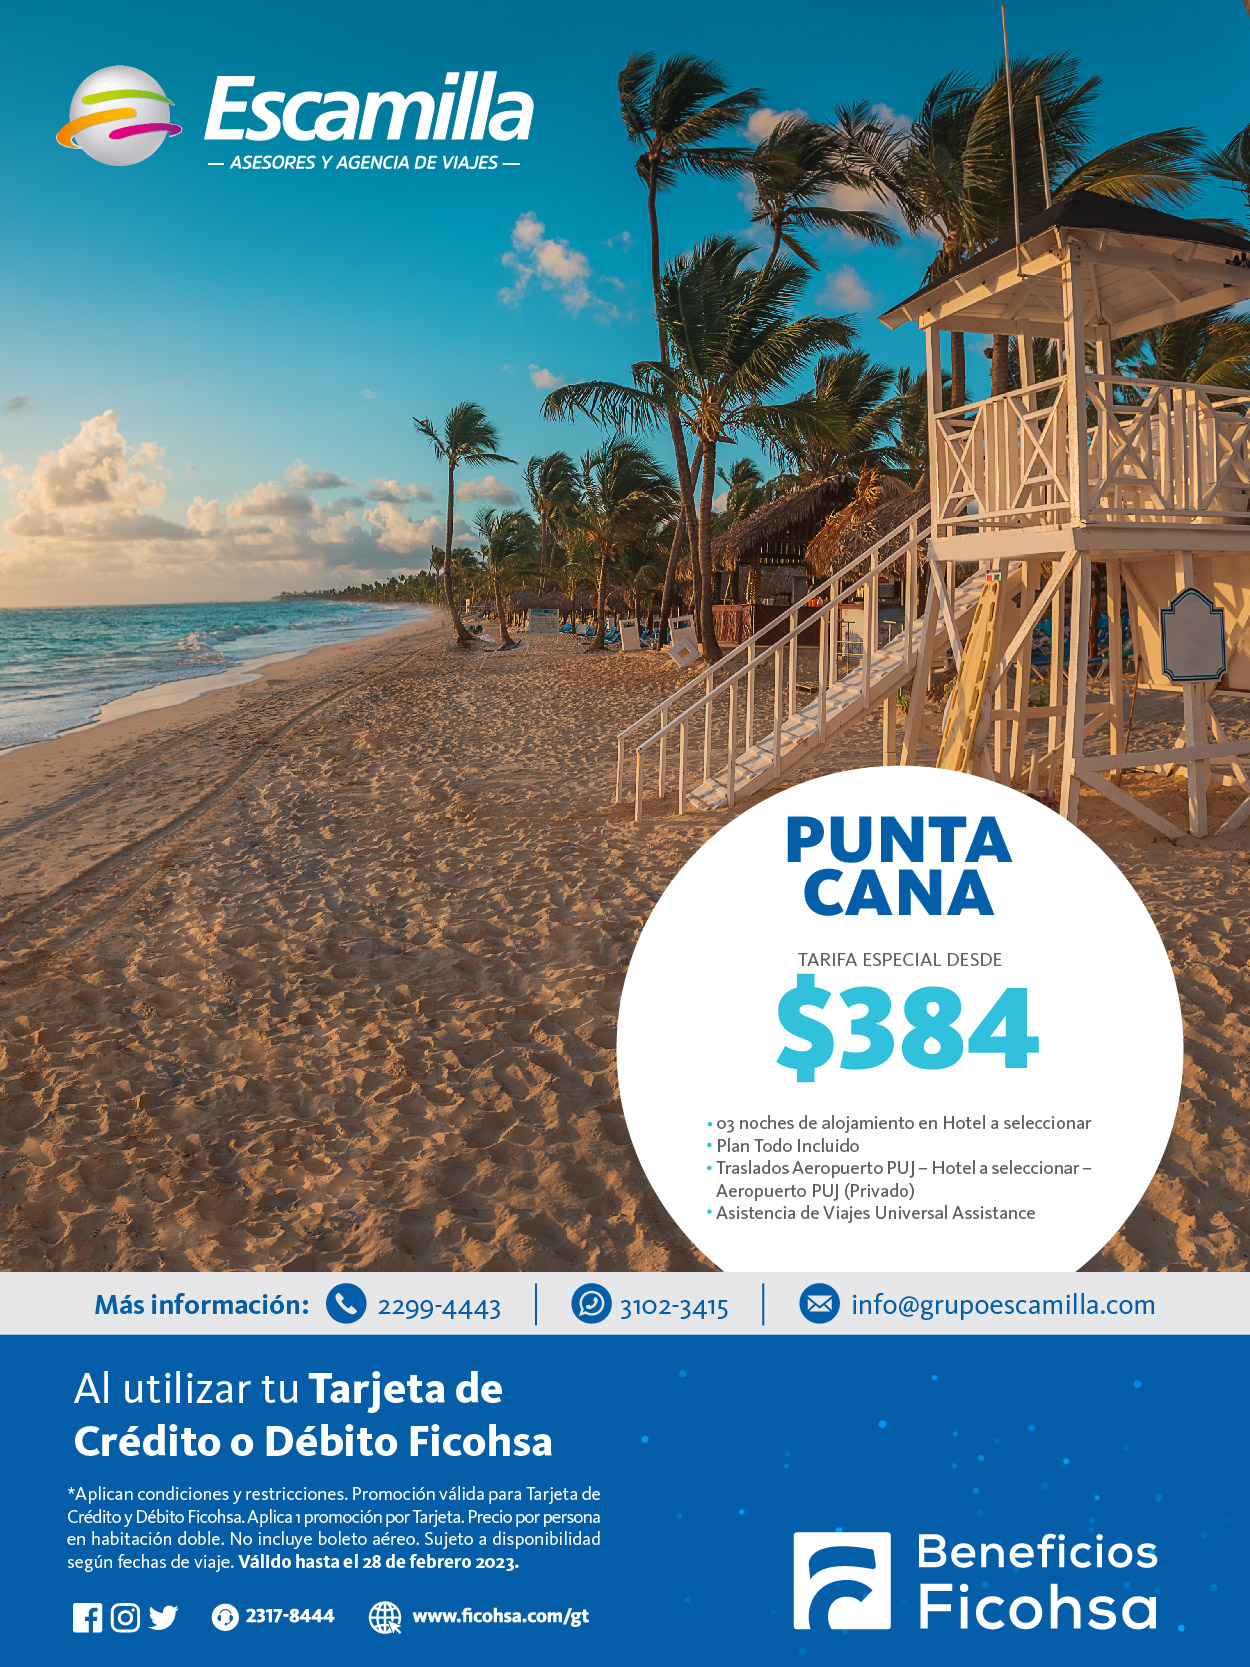 Viaja a Punta Cana por una Tarifa Especial con Escamilla